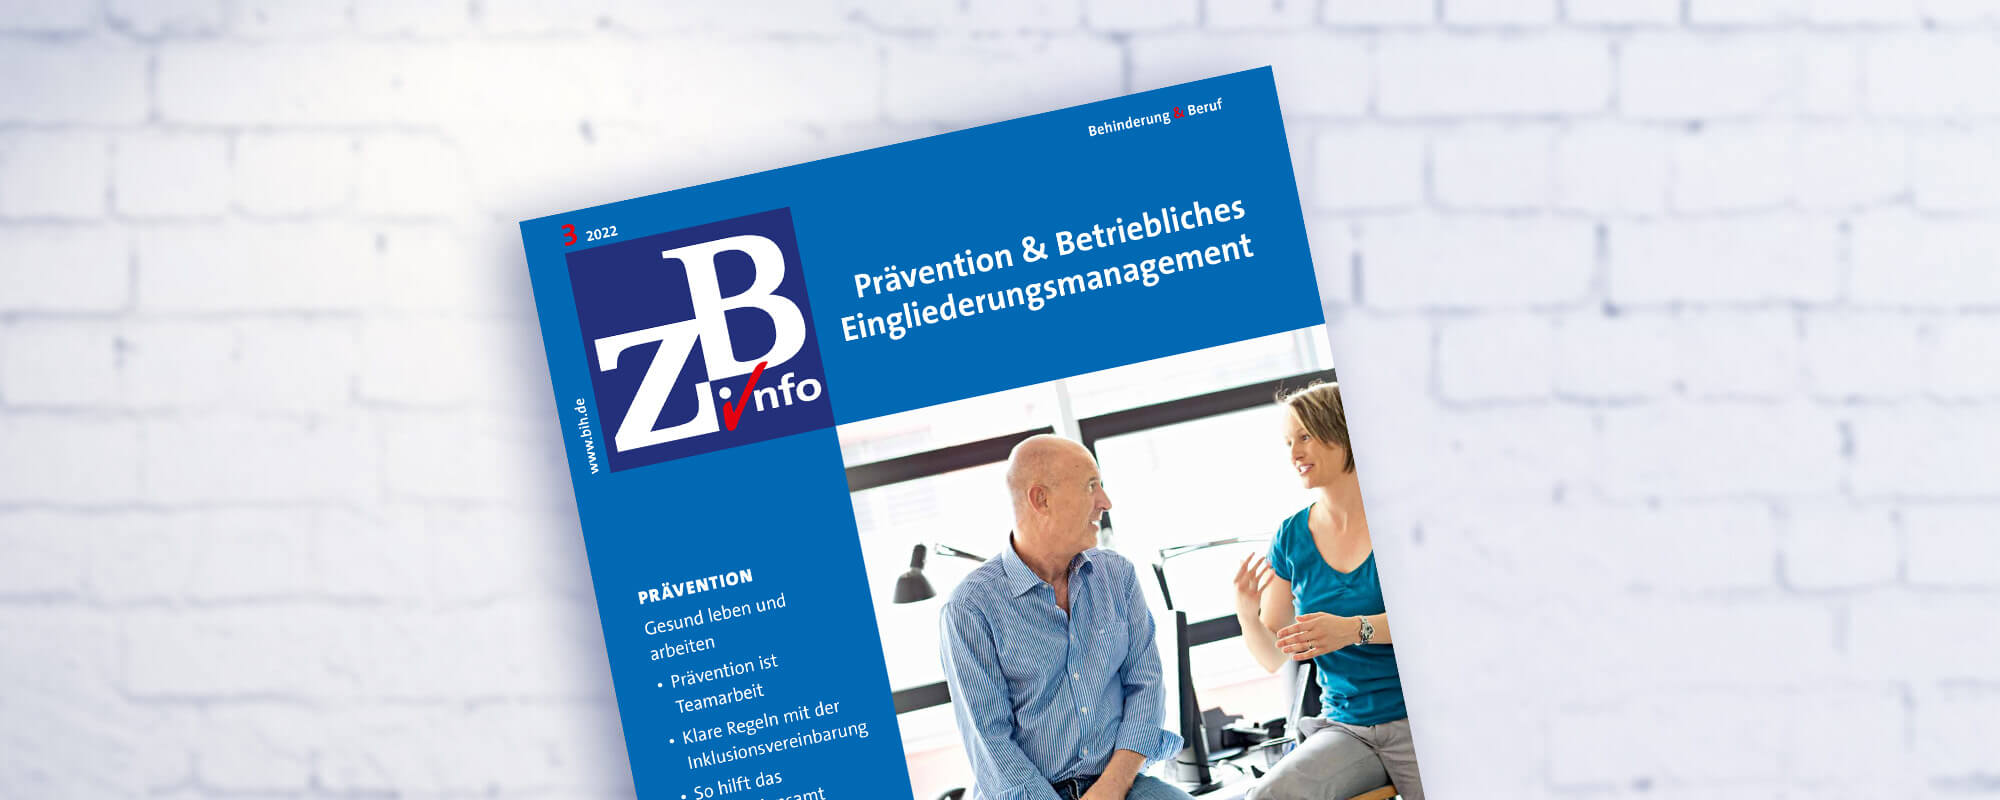 Cover der Broschüre "Prävention & Betriebliches Eingliederungsmanagement"